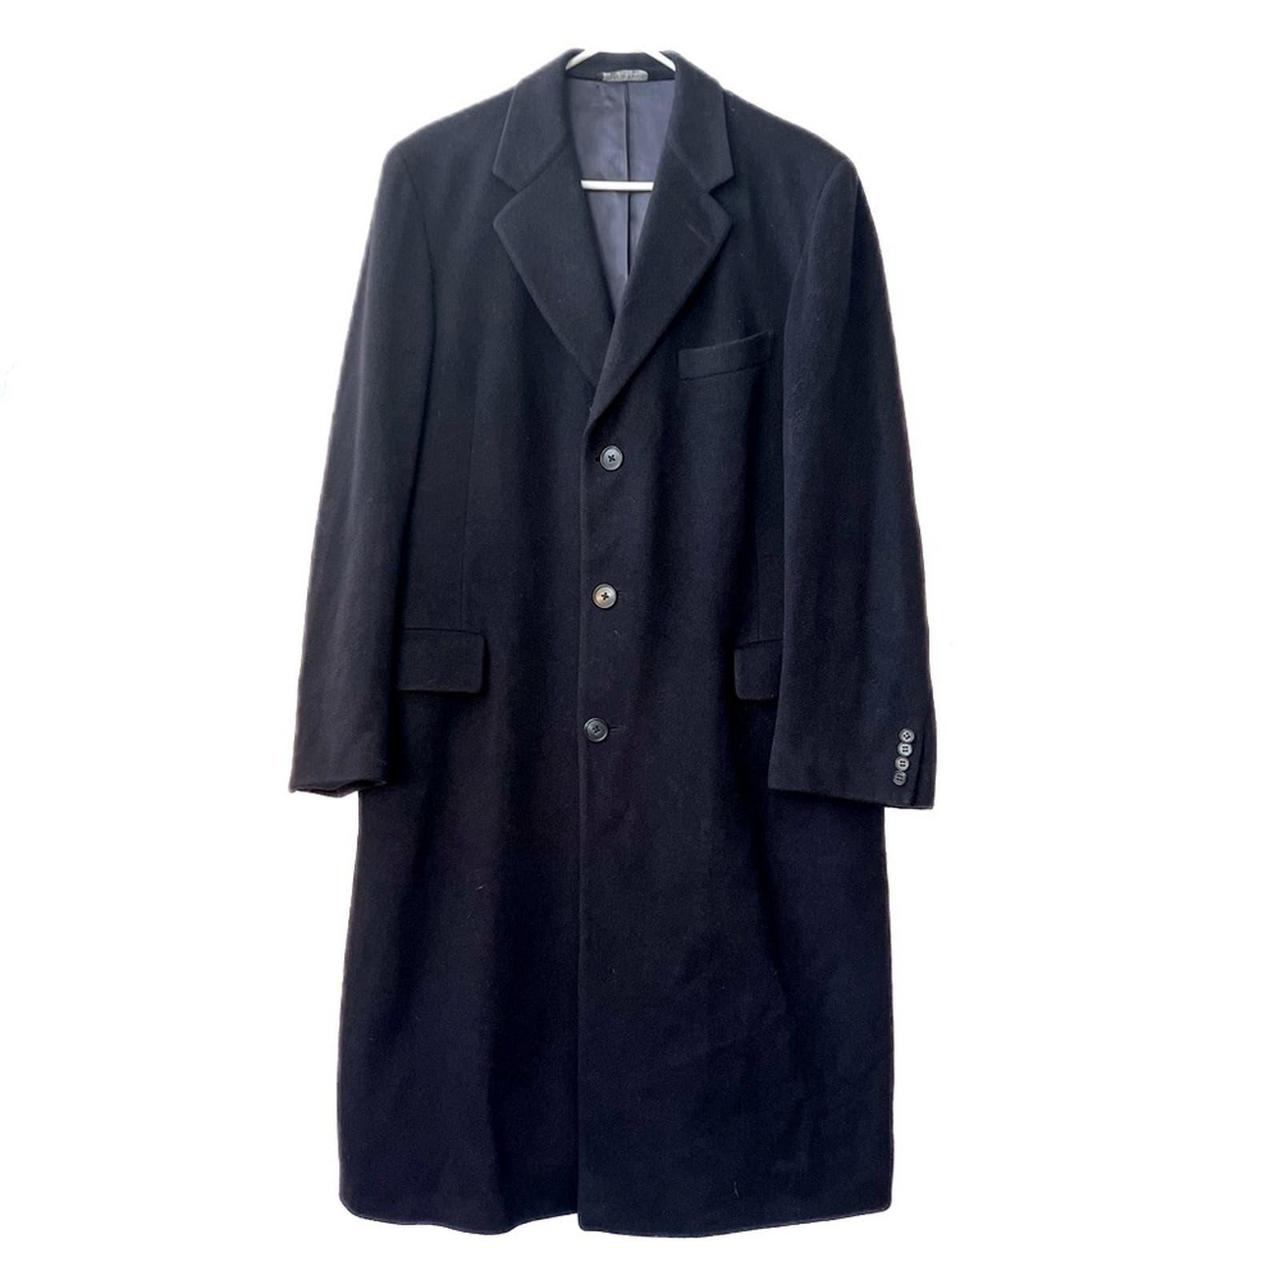 MARK SHALE 100% Cashmere Button Down Dress Coat Coat... - Depop